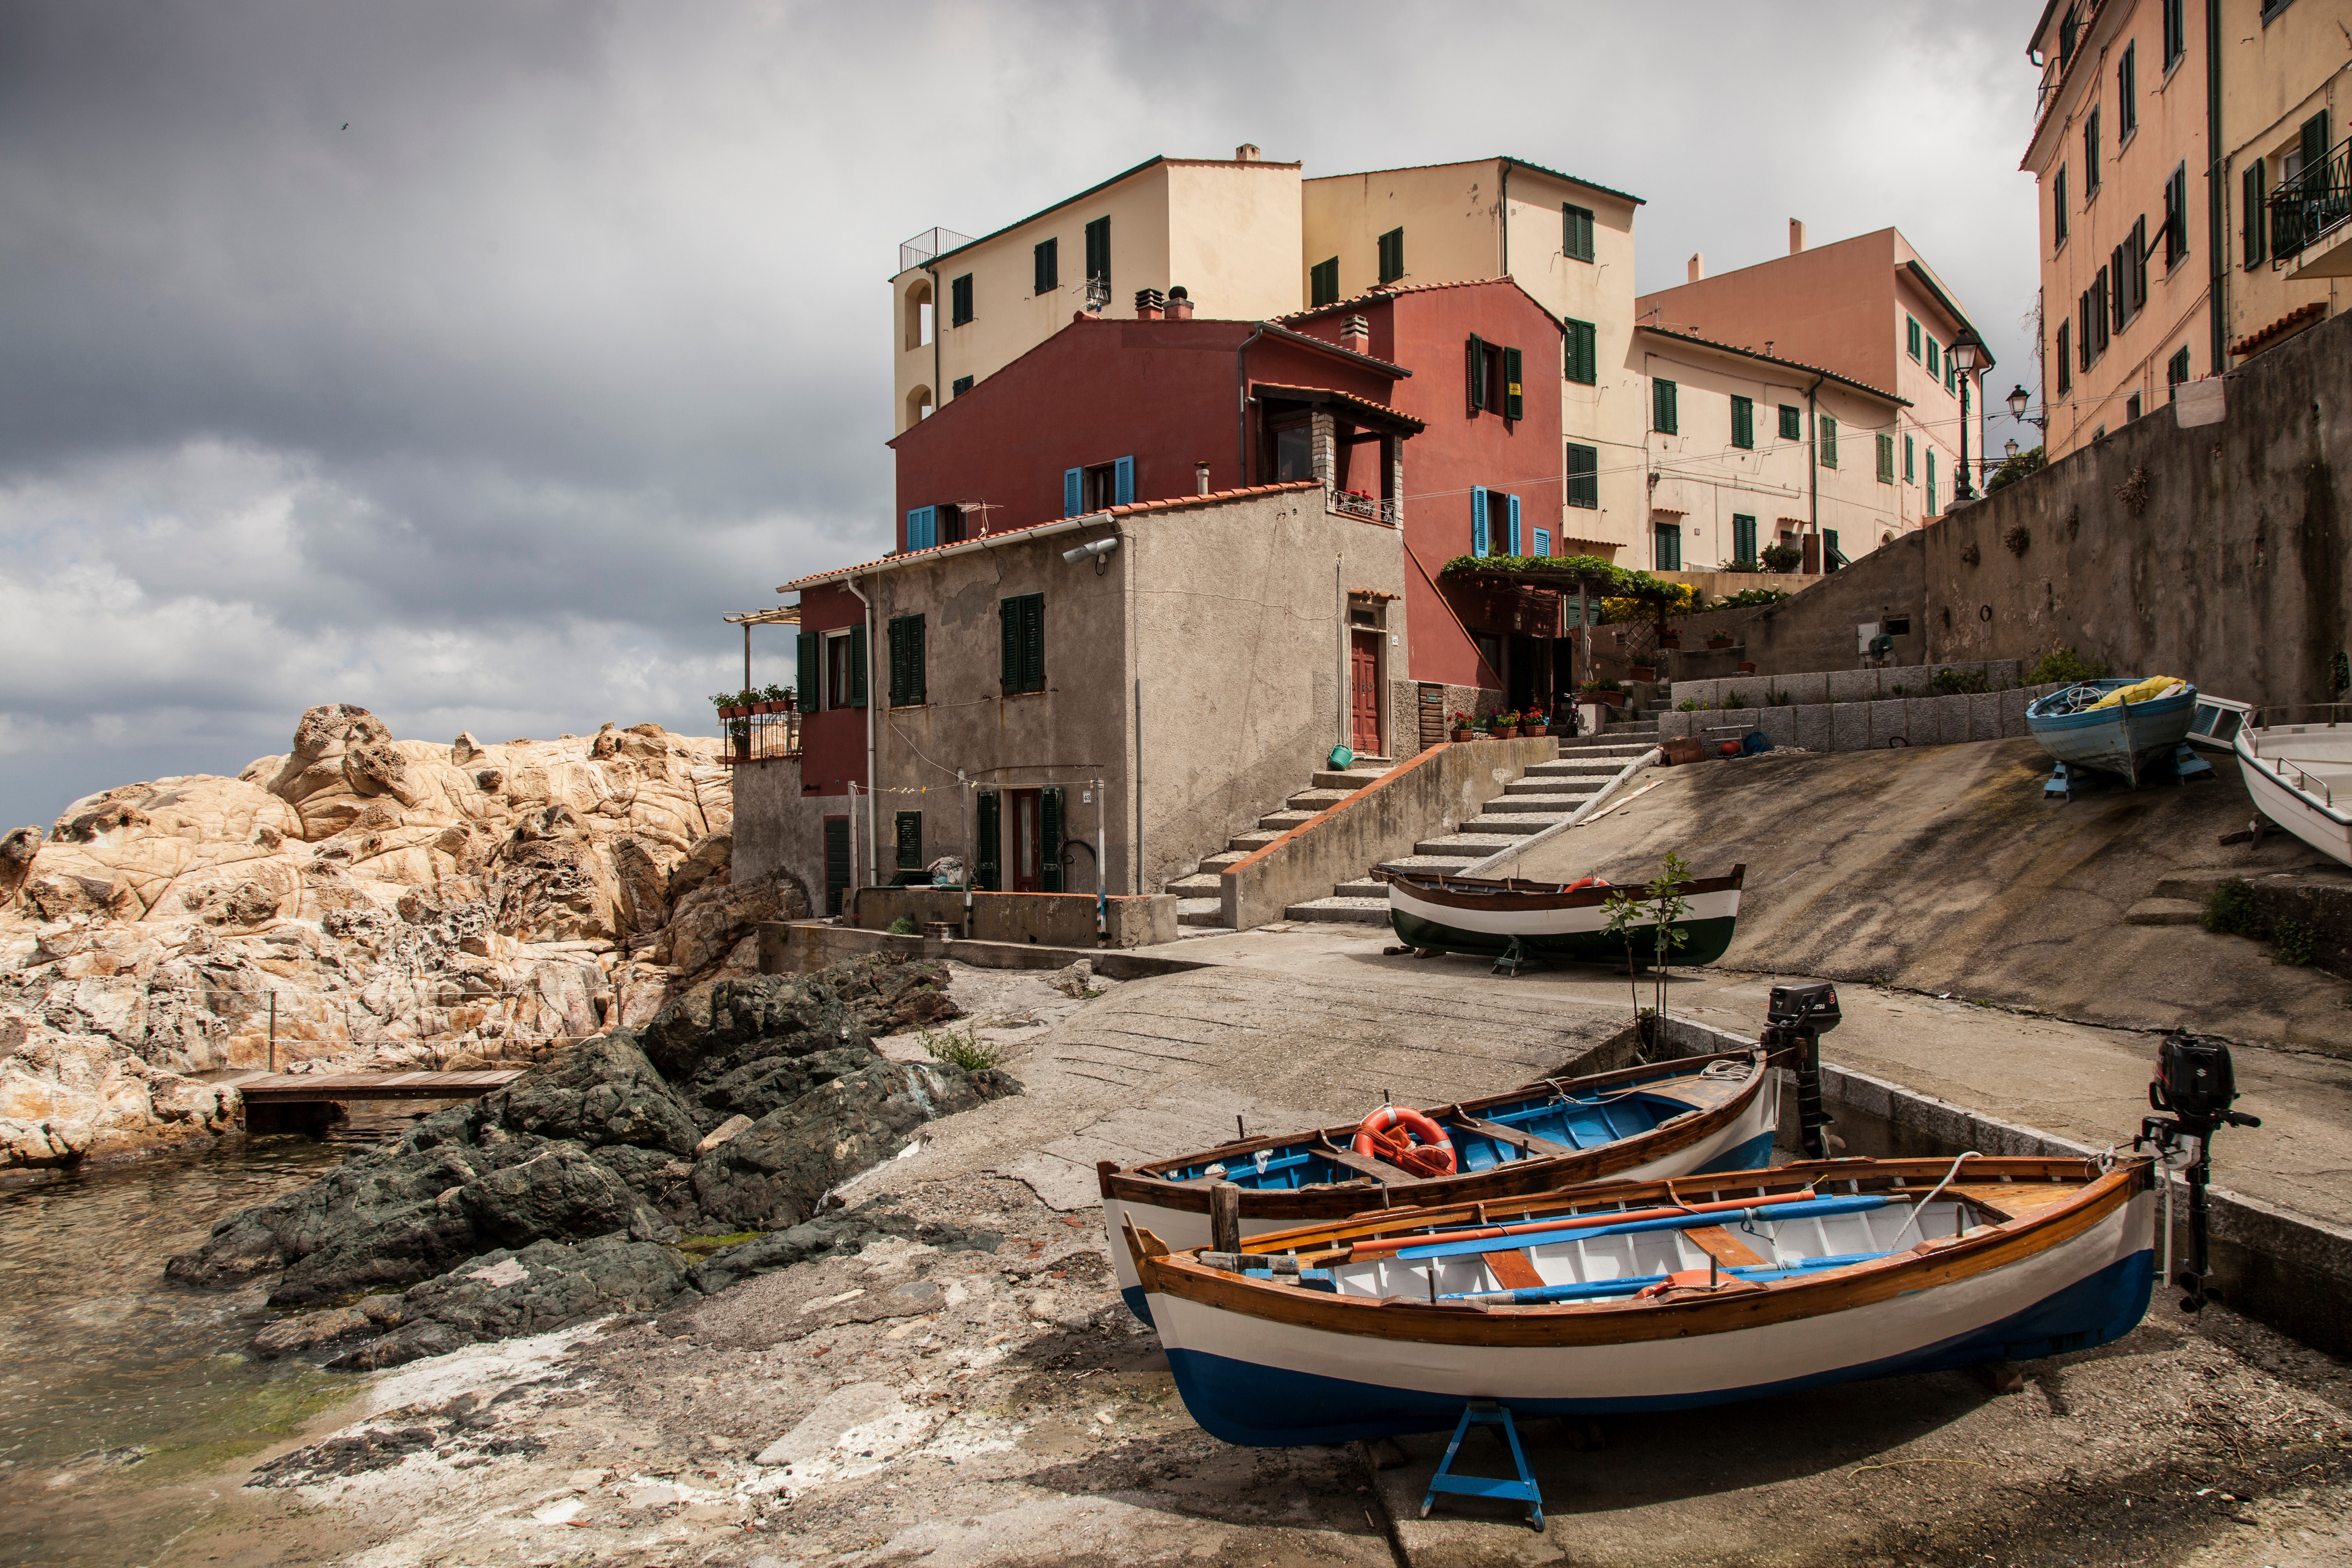 Fishing boats Marciana, Elba Island, Italy